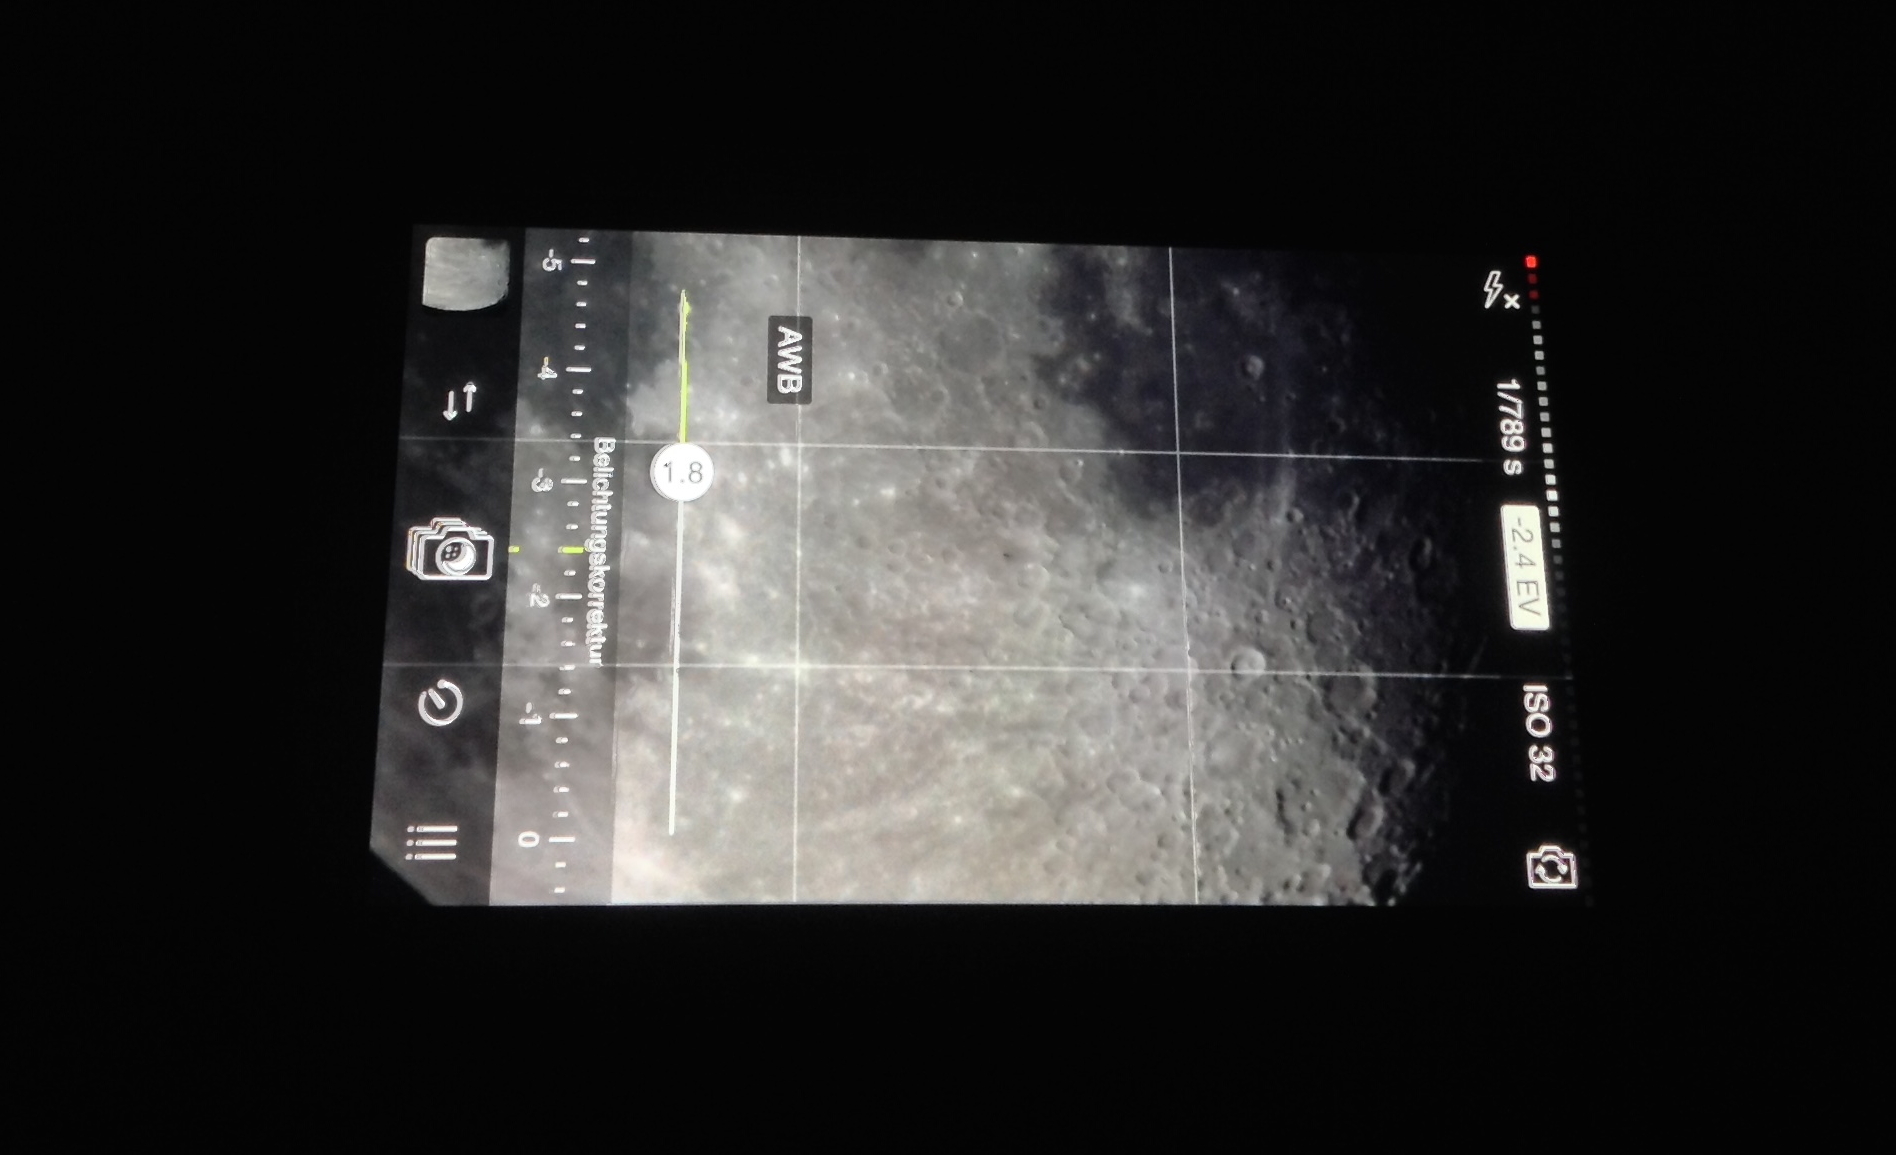 Astrofotografie mit dem iPhone Teil 1: Smartphone Adapter und Mondaufnahmen